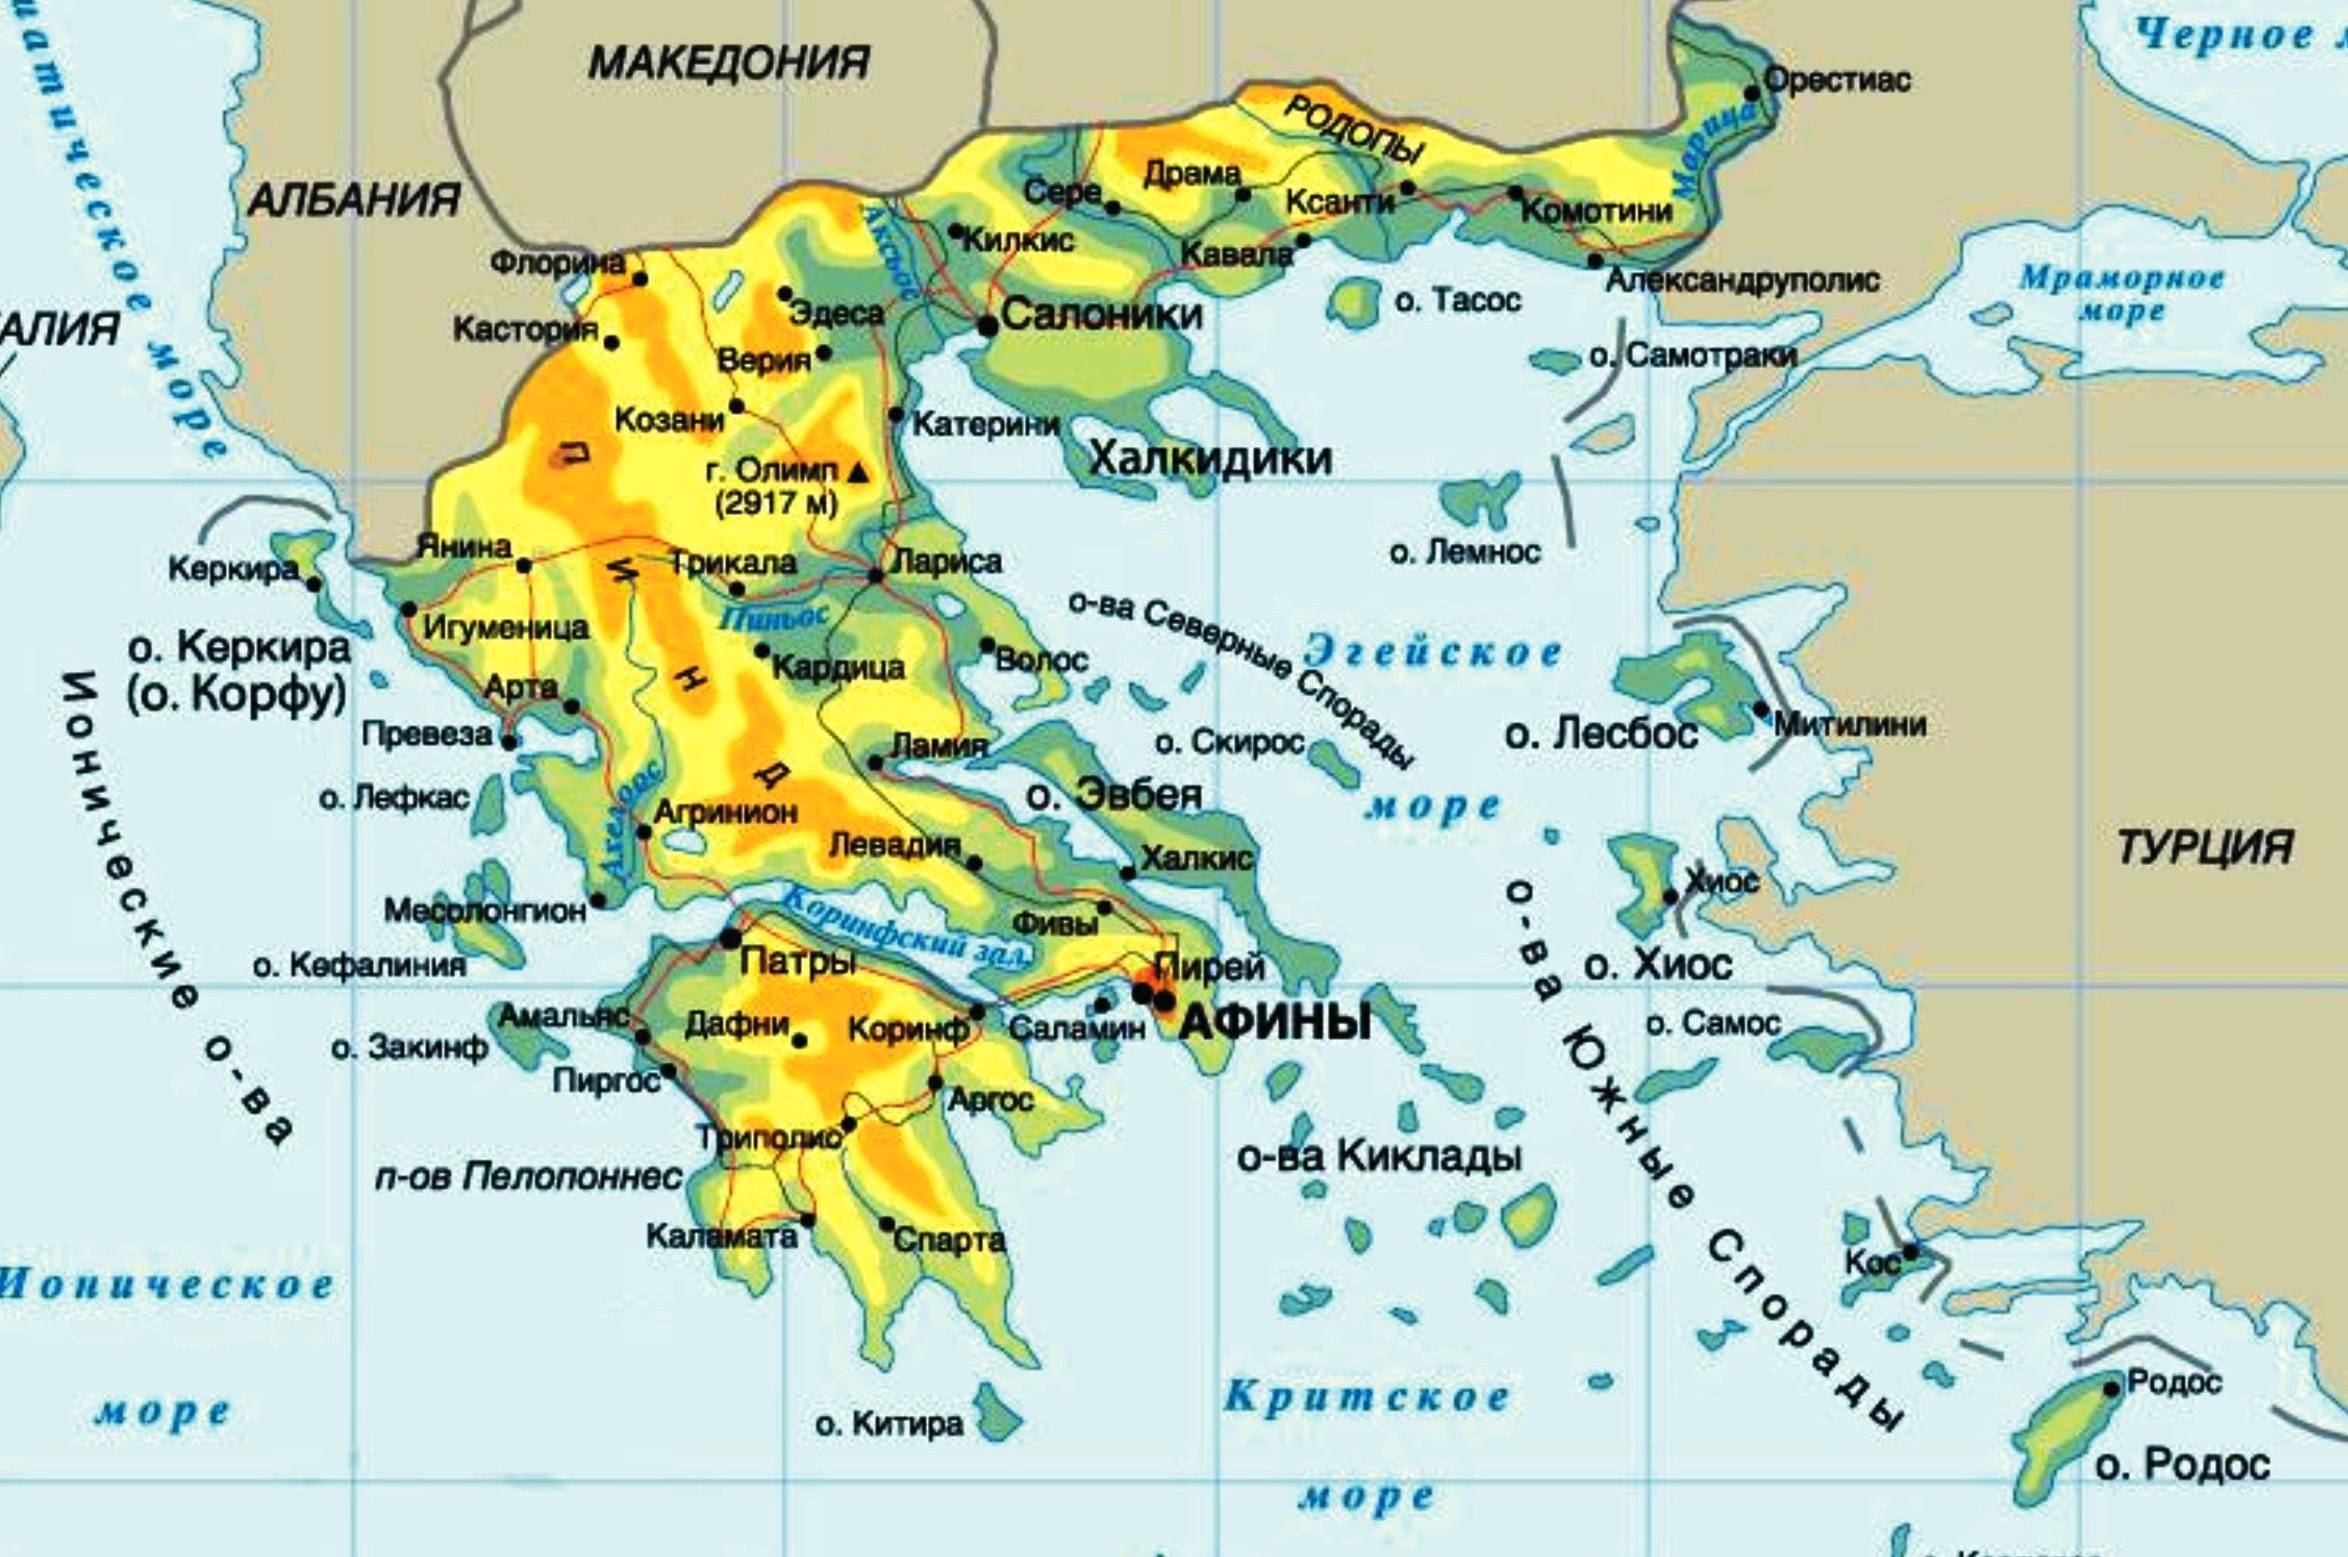 Аэропорты греции: материковые и островные аэровокзалы международного класса и внутреннего назначения